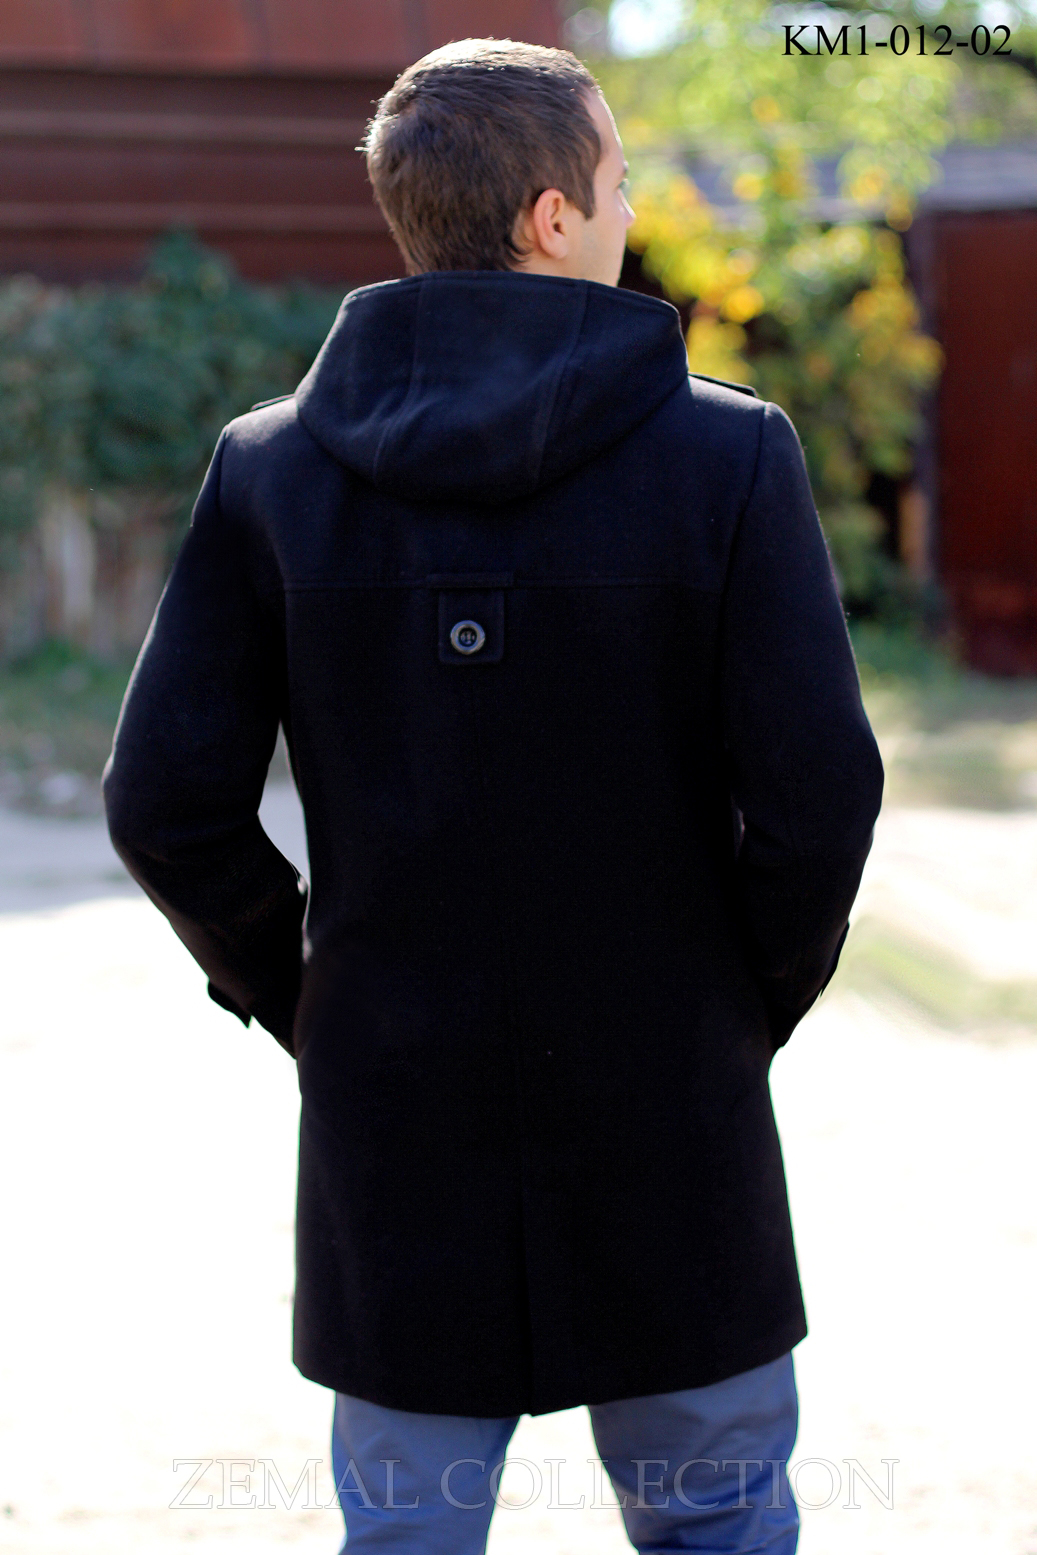 Мужские пальто оптом от производителя - Zemal